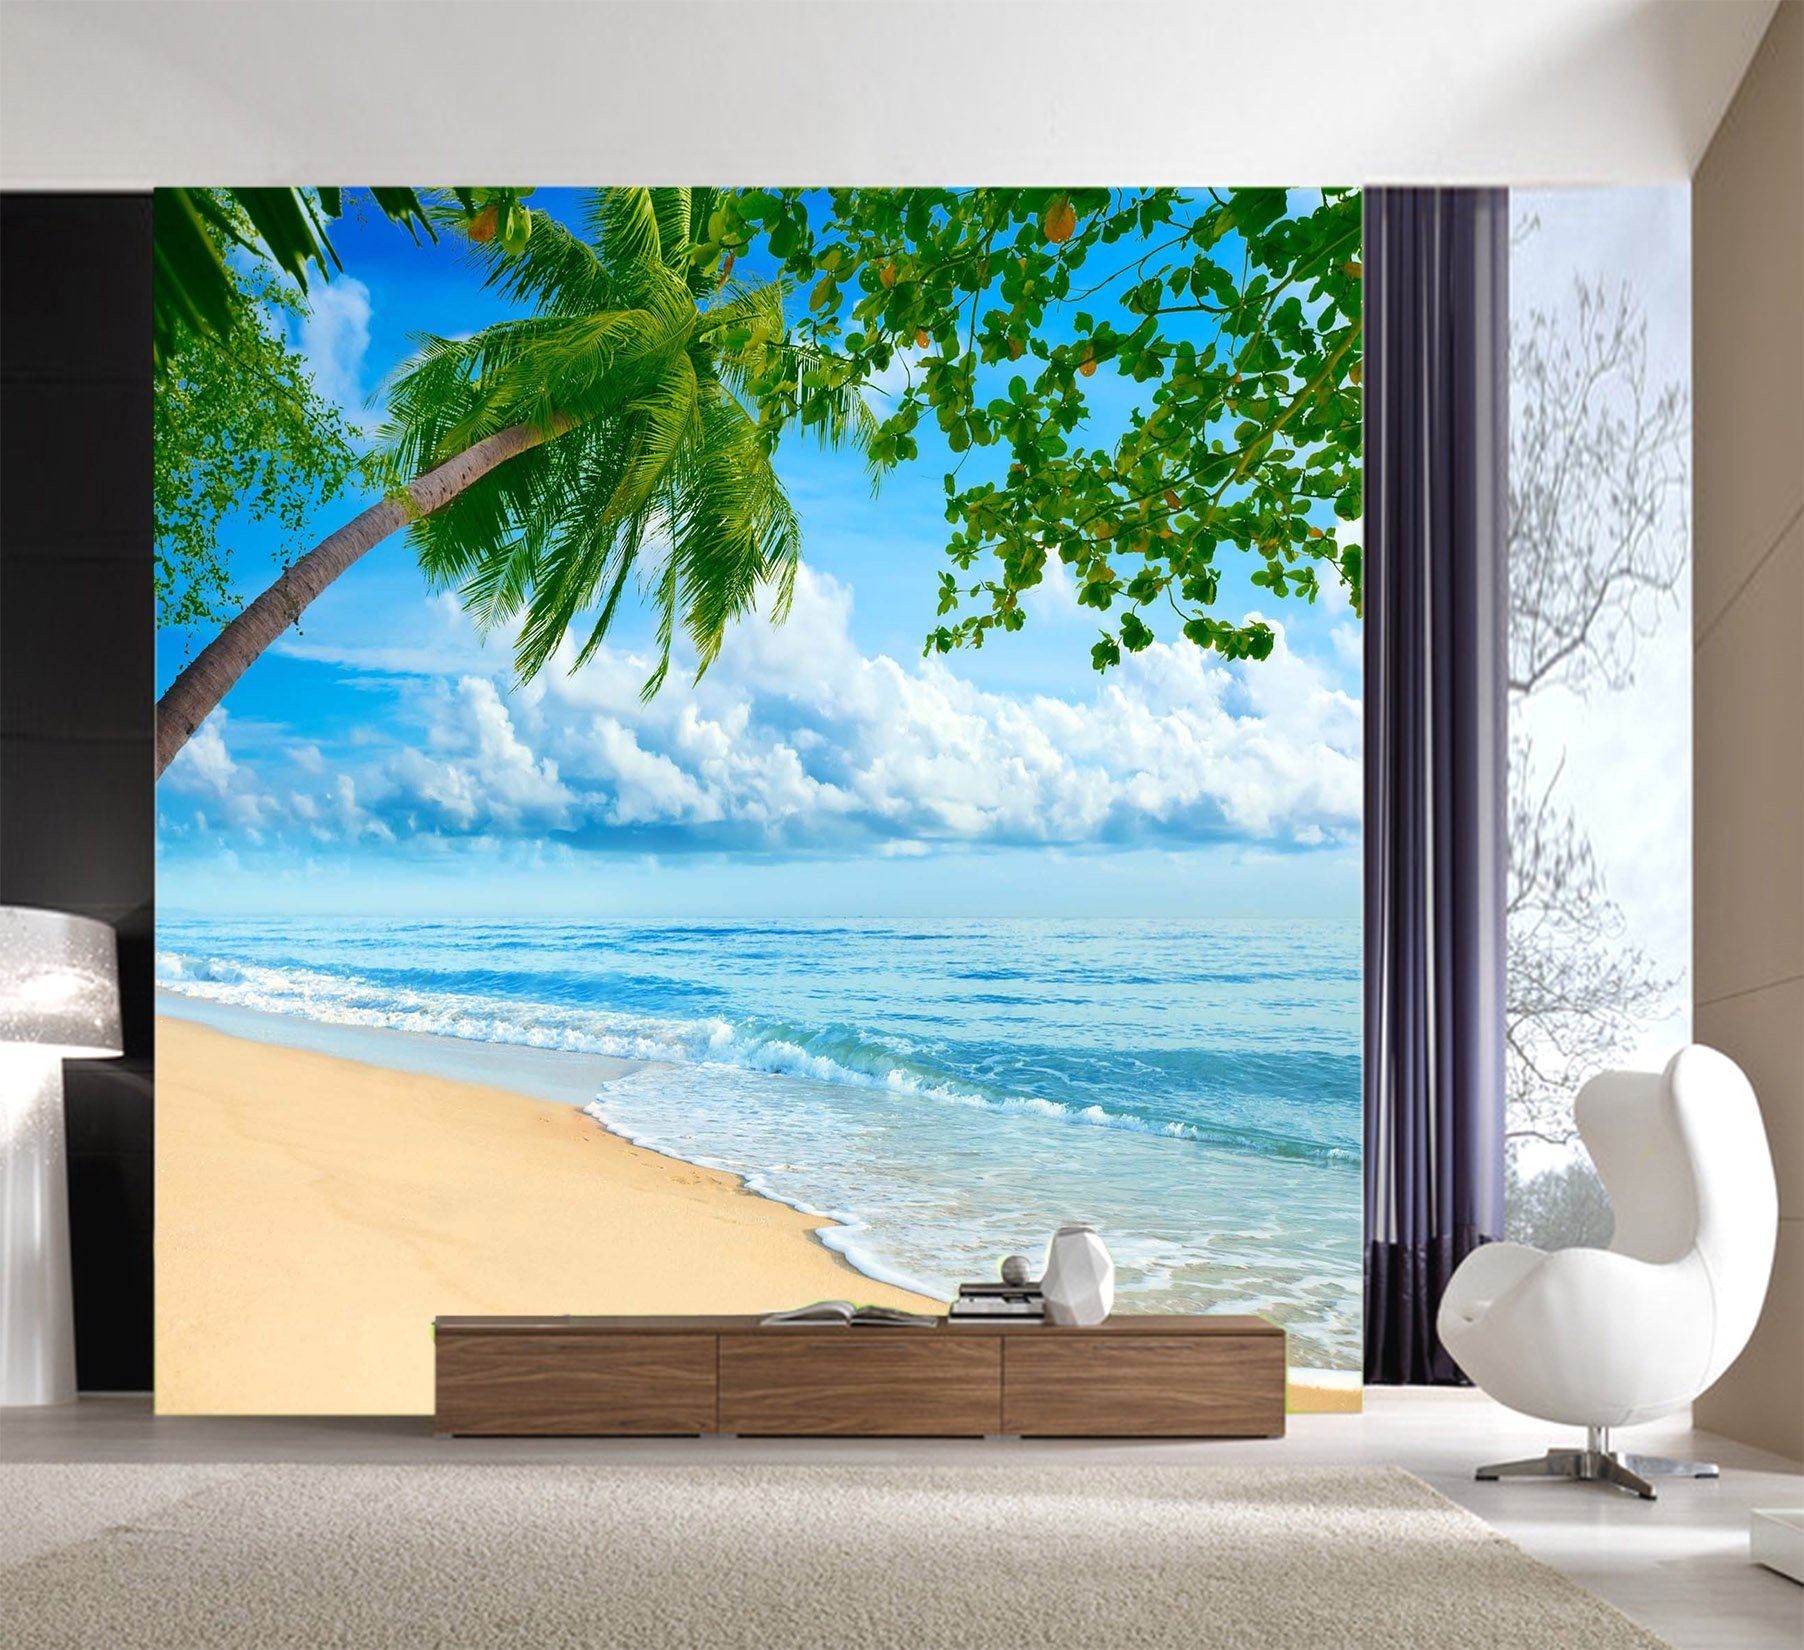 3D Sand Sea Coconut 667 Wallpaper AJ Wallpaper 